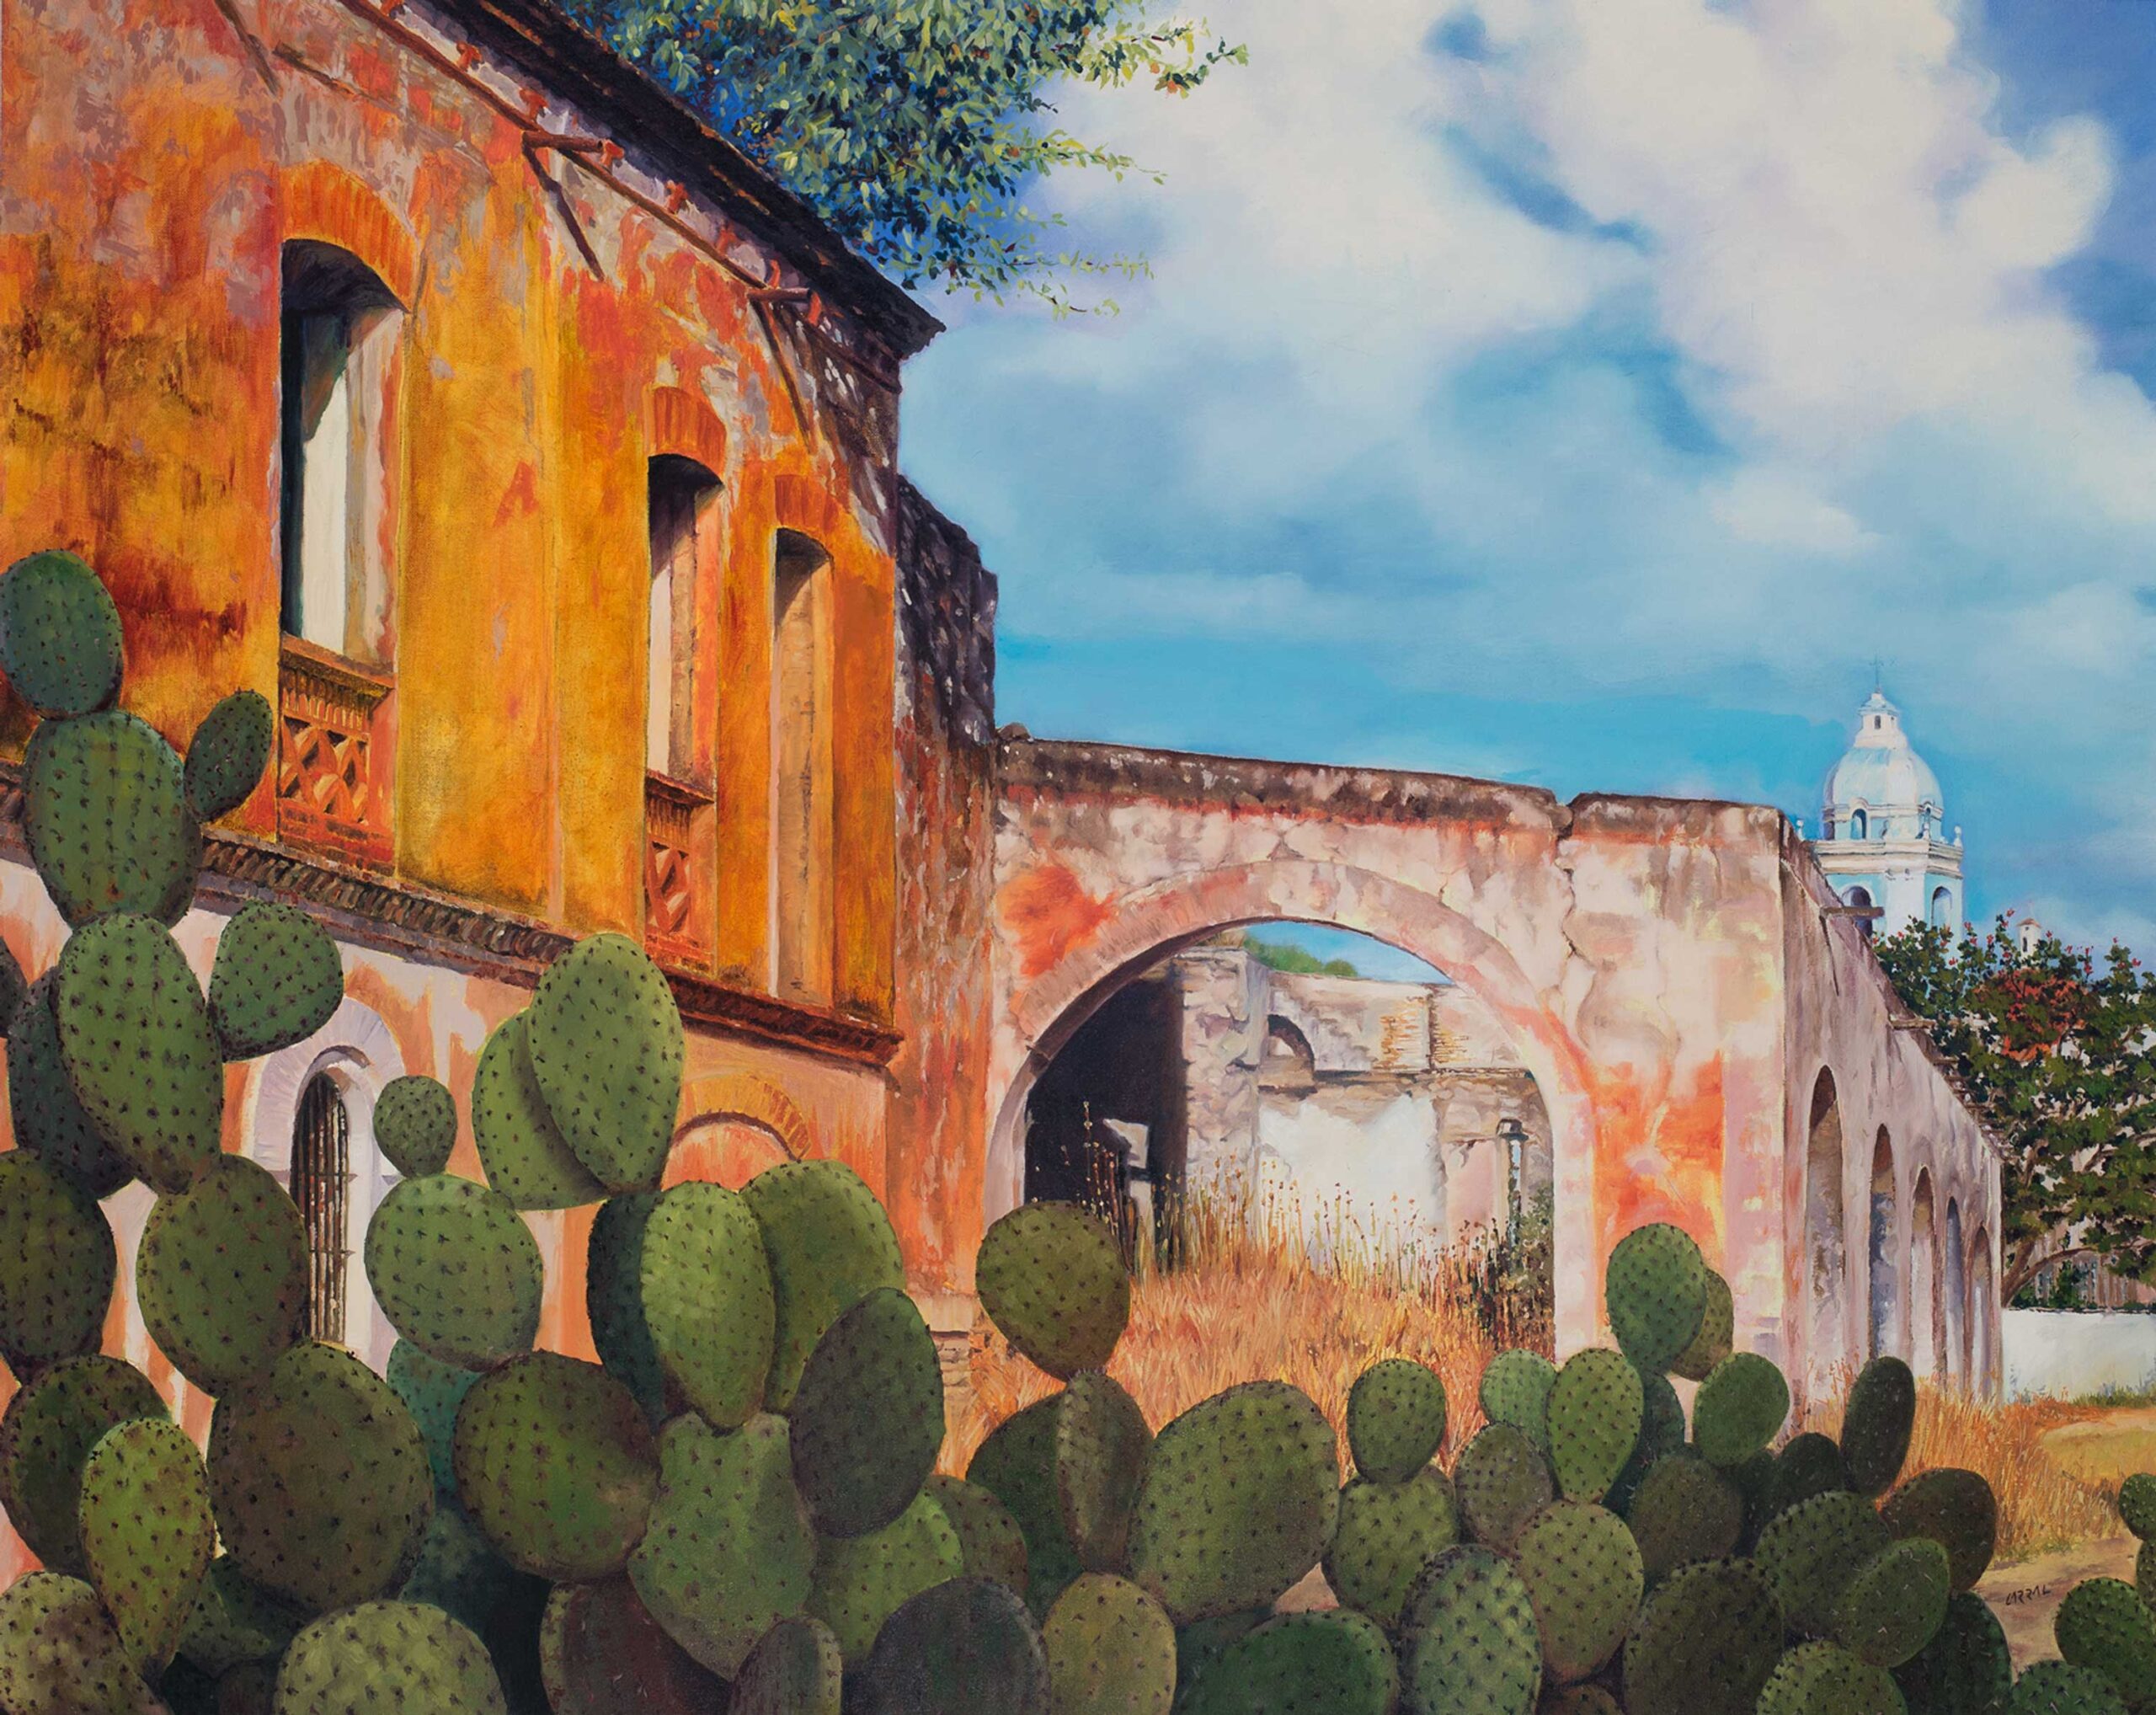 Jorge Carral, "La Hacienda (The Estate)," 2013, oil on canvas, 47 x 63 in., private collection, Punta Mita, Nayarit, Mexico